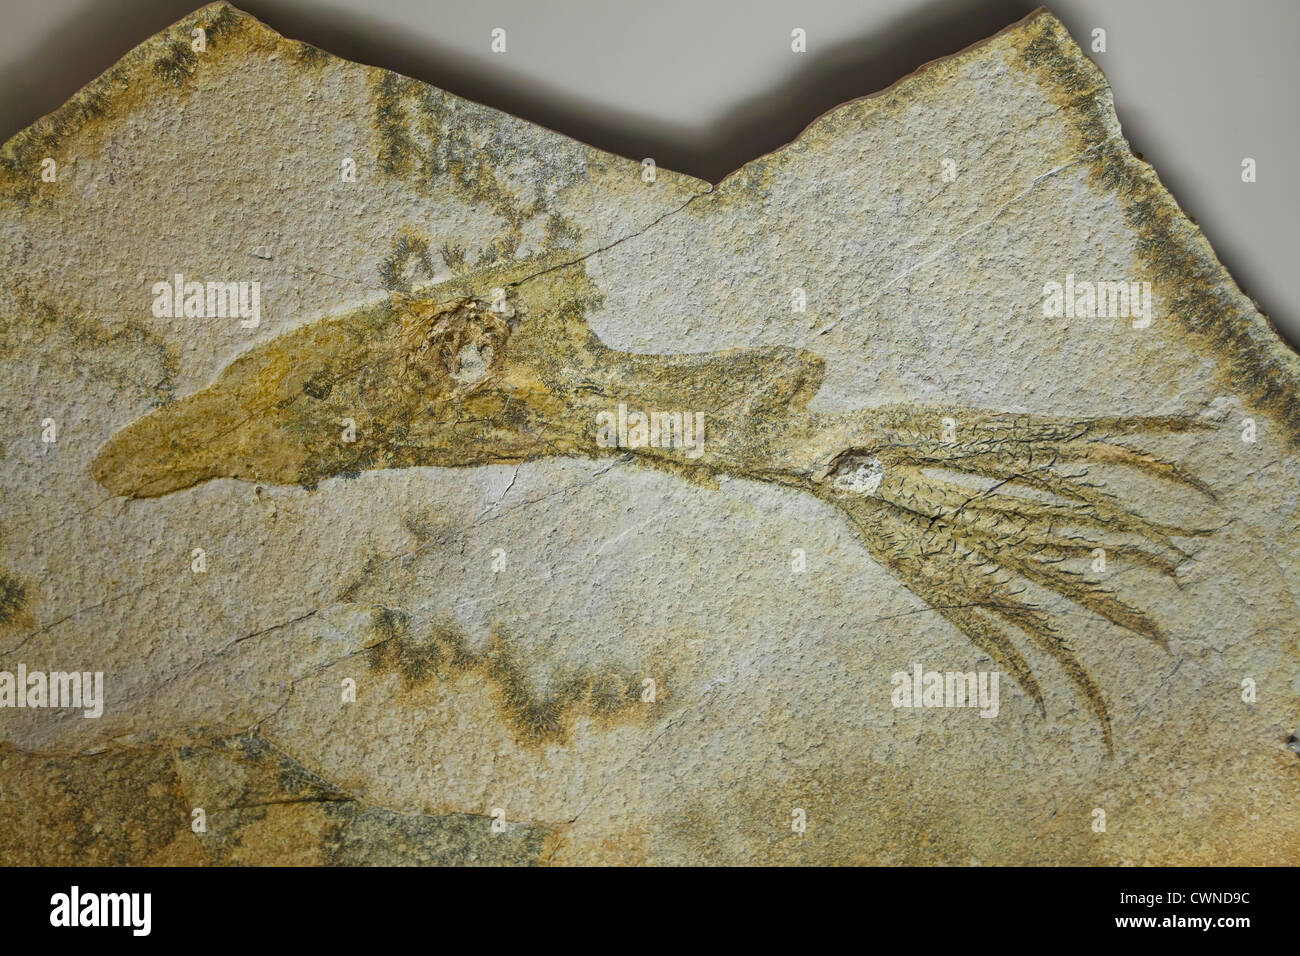 Squid fossile de la période jurassique Banque D'Images